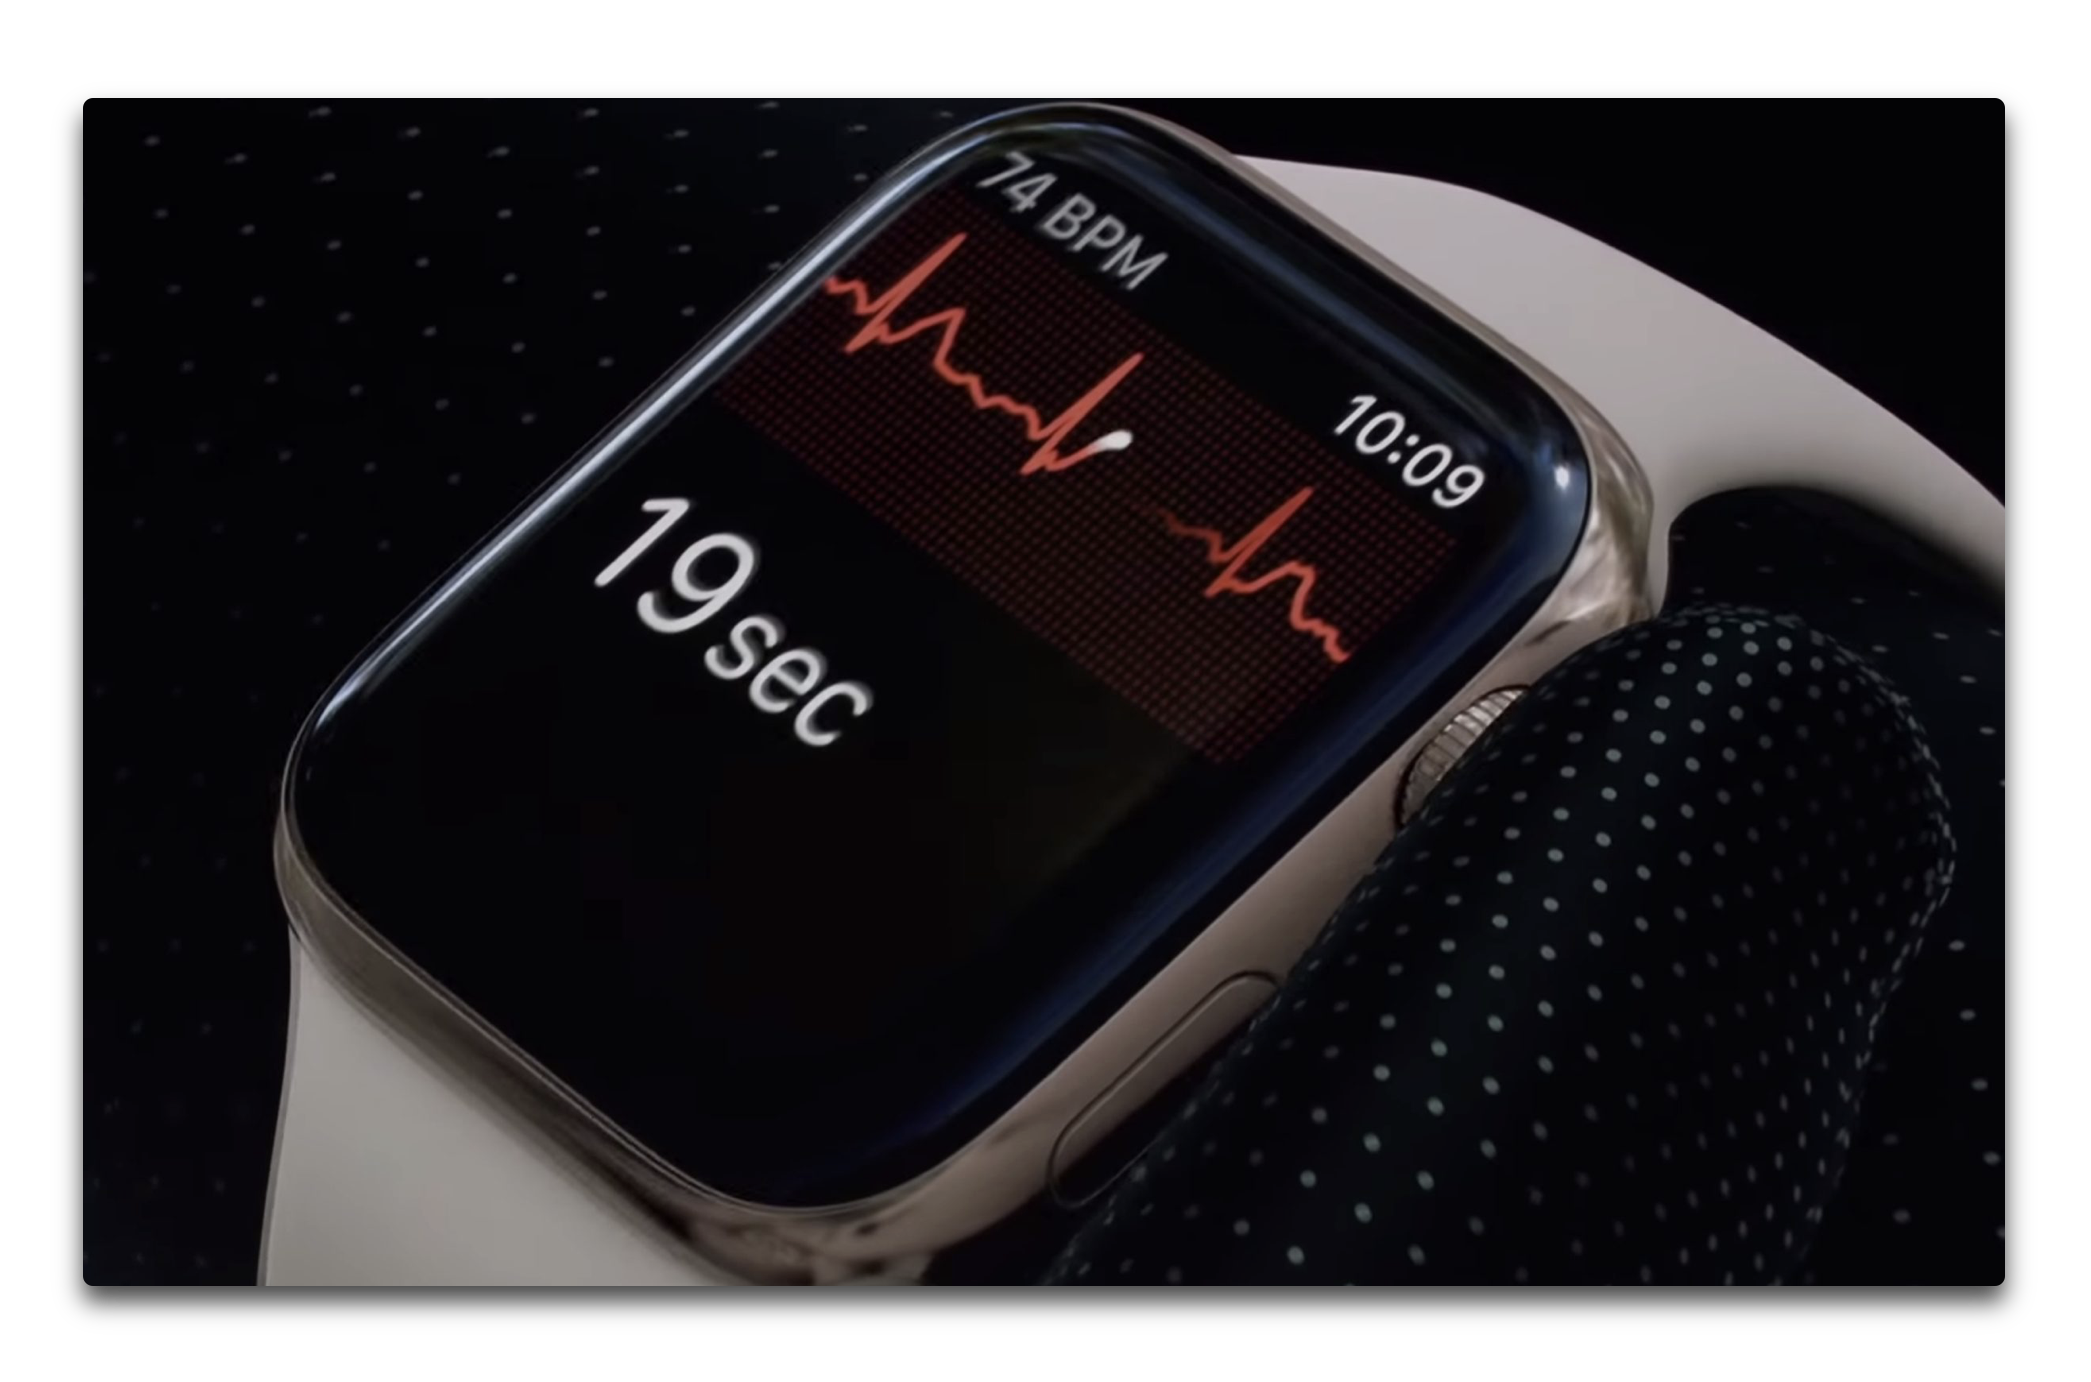 Apple Watchの心拍センサーがPCR検査の1週間前にCOVID-19を予測できることを示唆する新たな研究